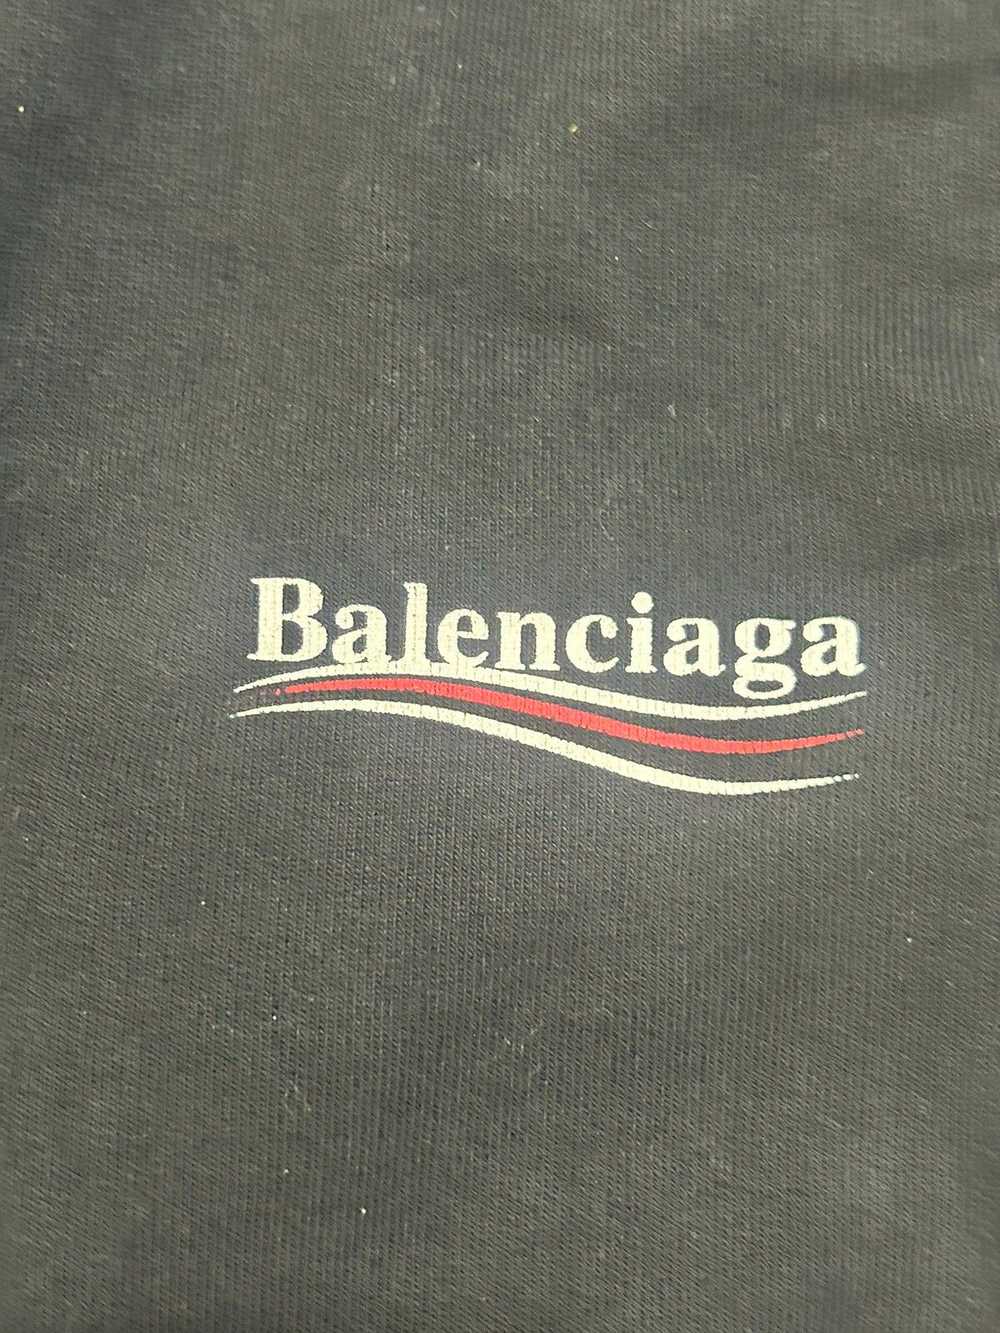 Balenciaga Balenciaga Political Campaign Sweatpan… - image 2